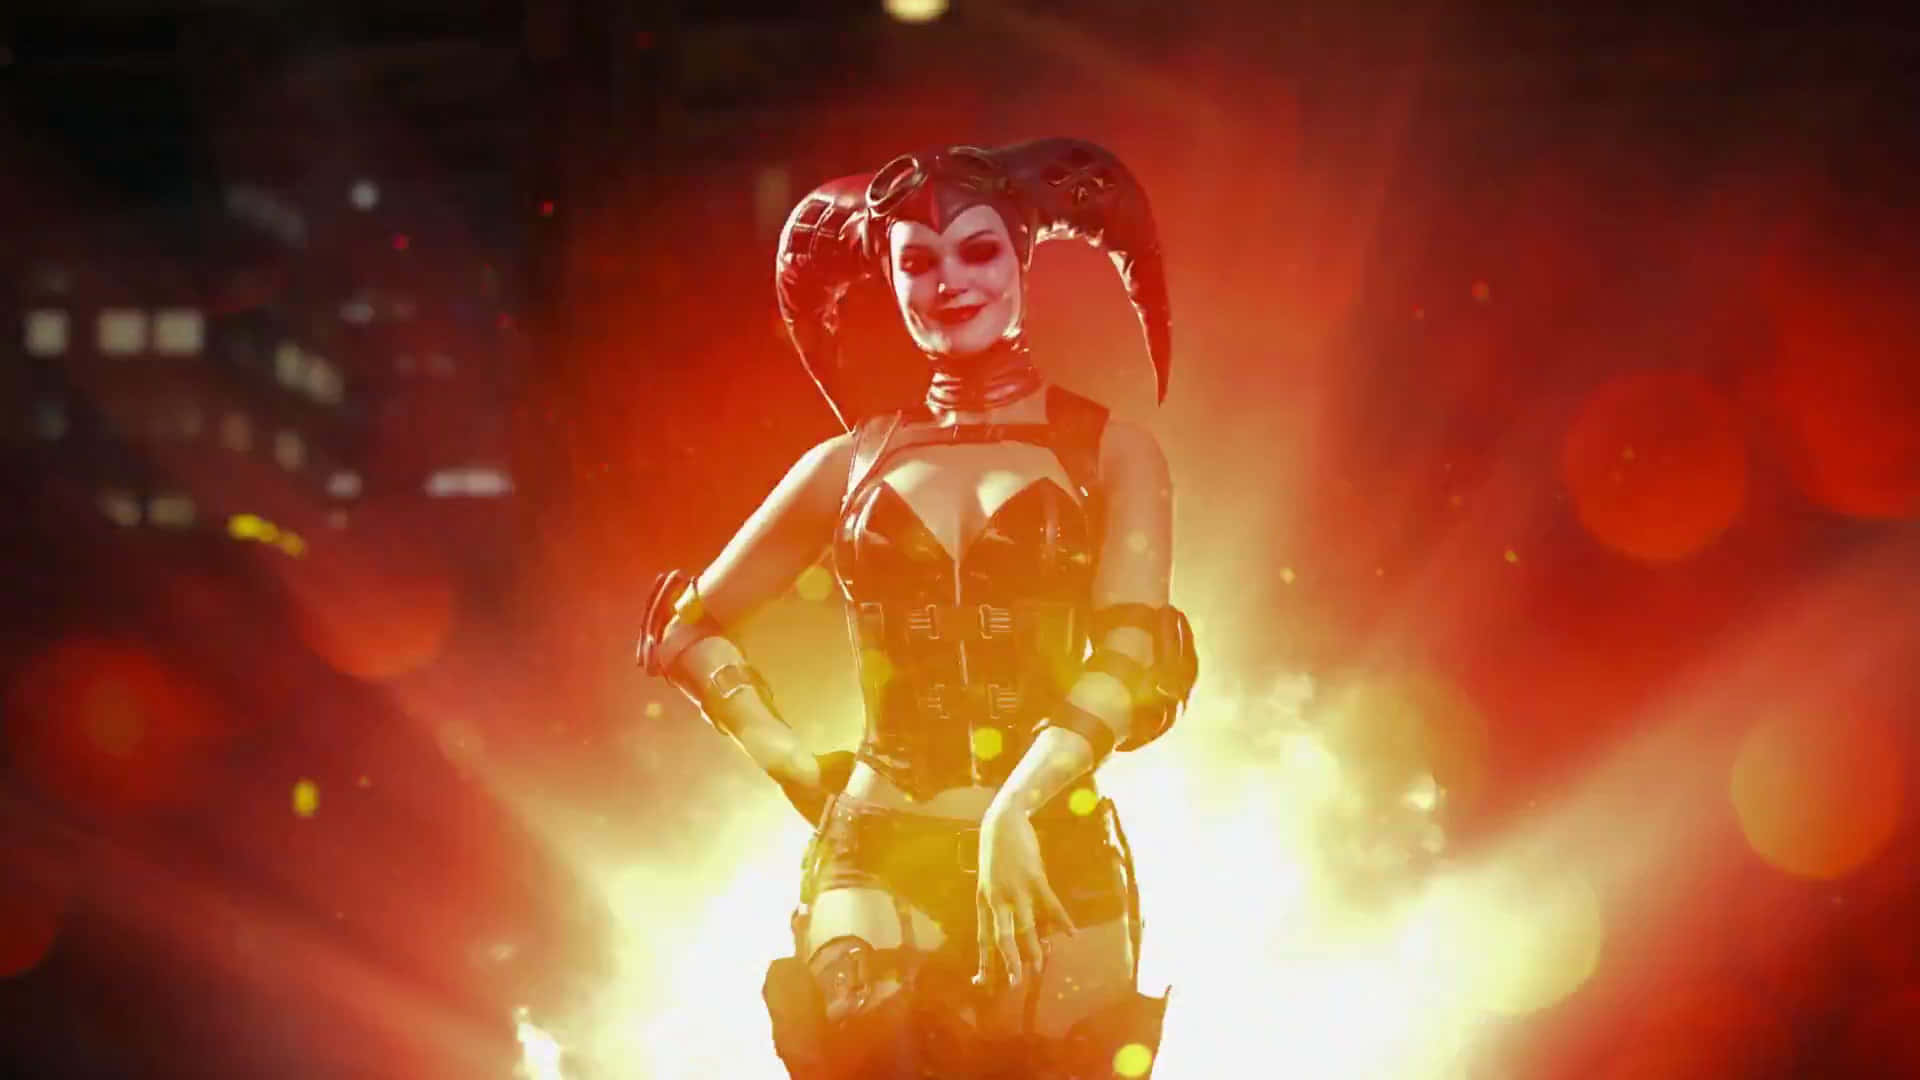 Preparese Para Entrar Em Um Novo Mundo De Caos E Destruição - Injustice 2 Com Harley Quinn! Papel de Parede